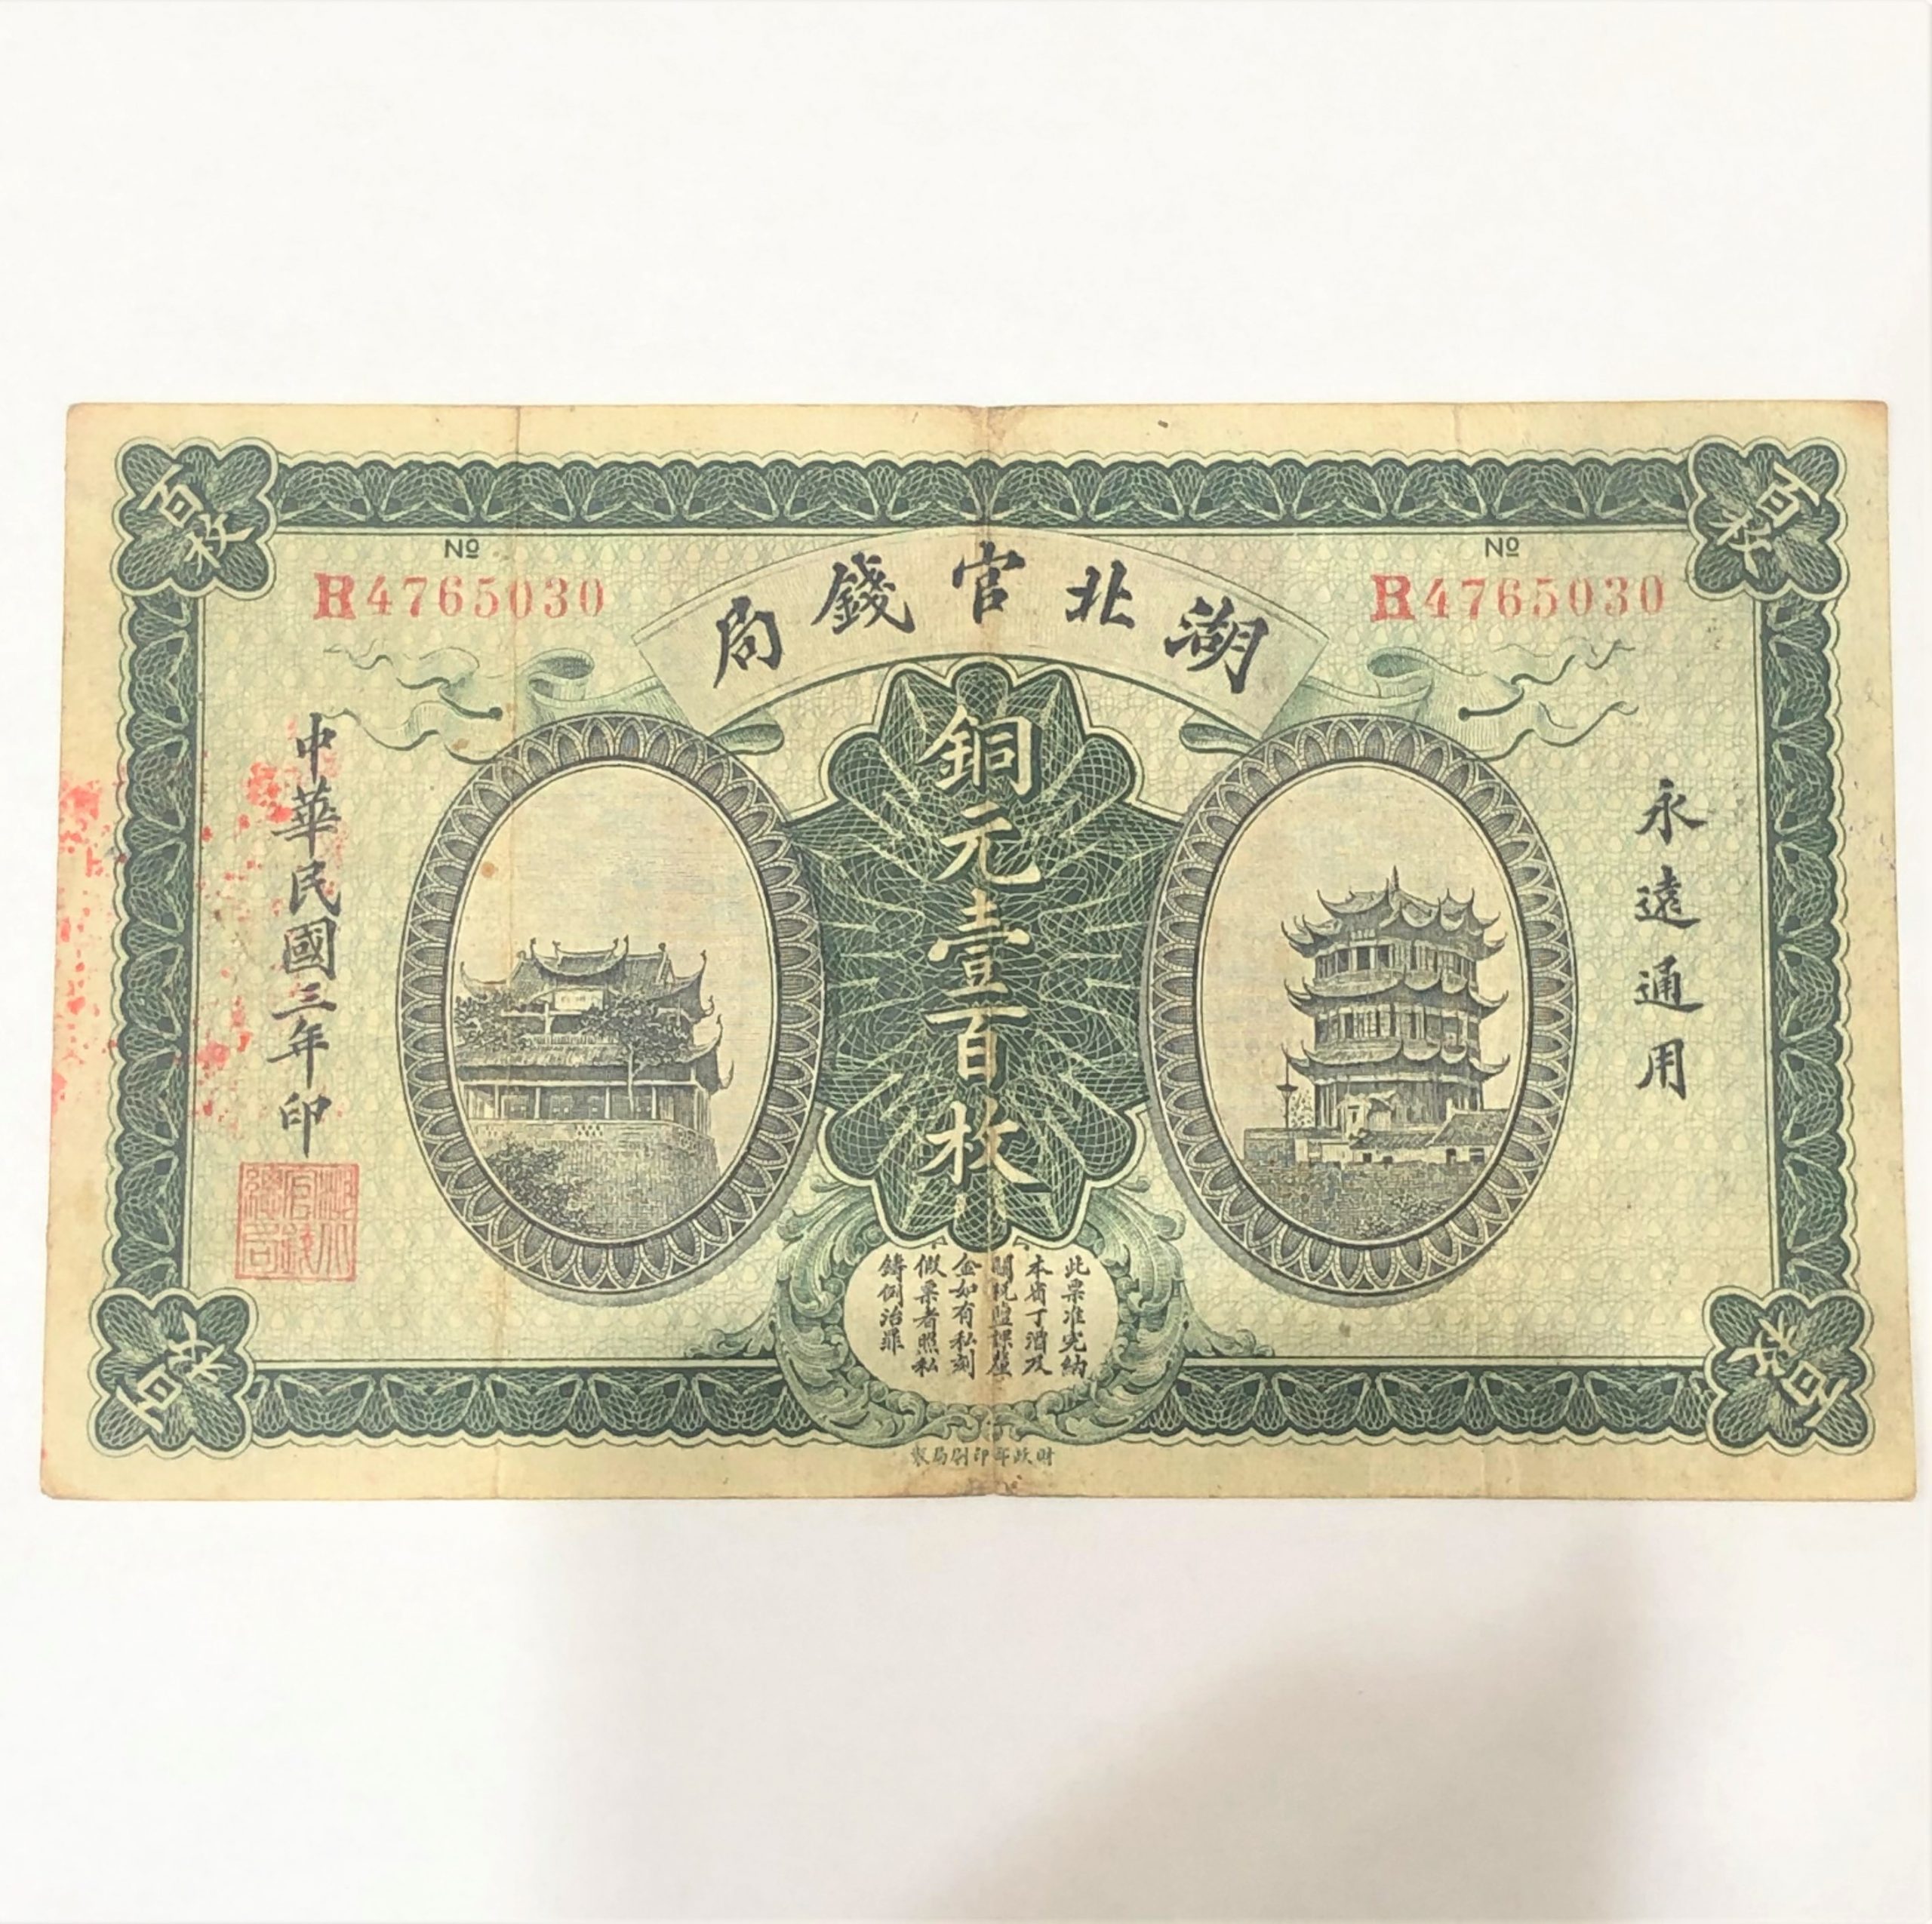 湖北官銭局 銅元壹百枚 中国古紙幣